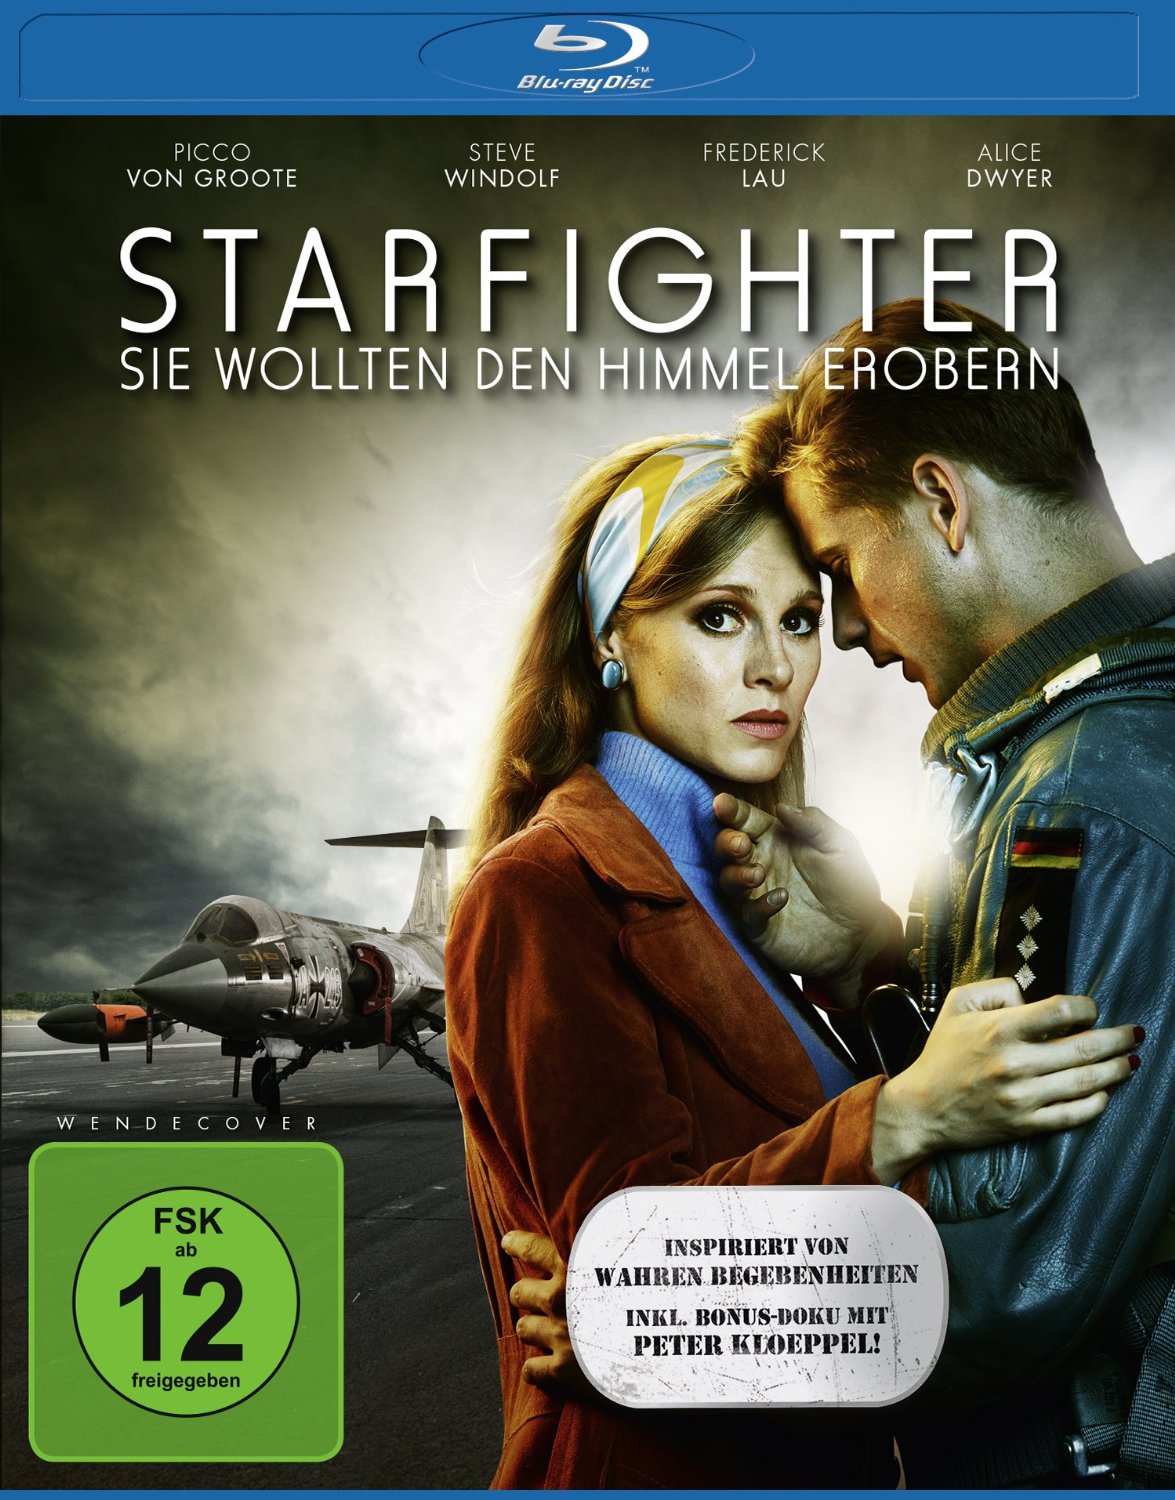 Starfighter – Sie wollten den Himmel erobern – Blu-ray-Review